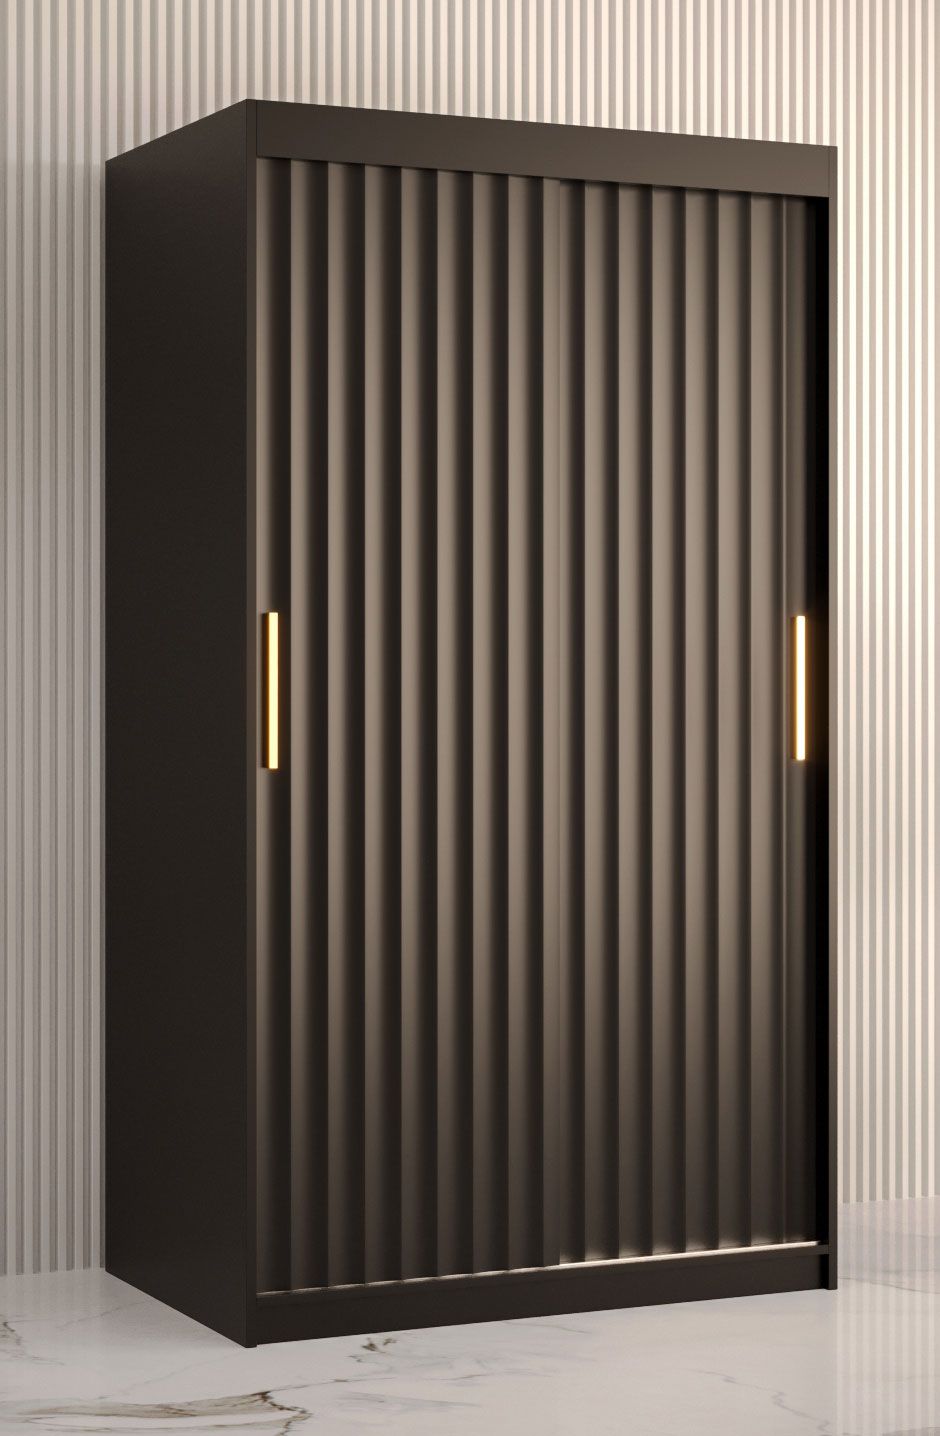 Armoire au design moderne Balmenhorn 52, Couleur : Noir mat - Dimensions : 200 x 100 x 62 cm (h x l x p), avec cinq casiers